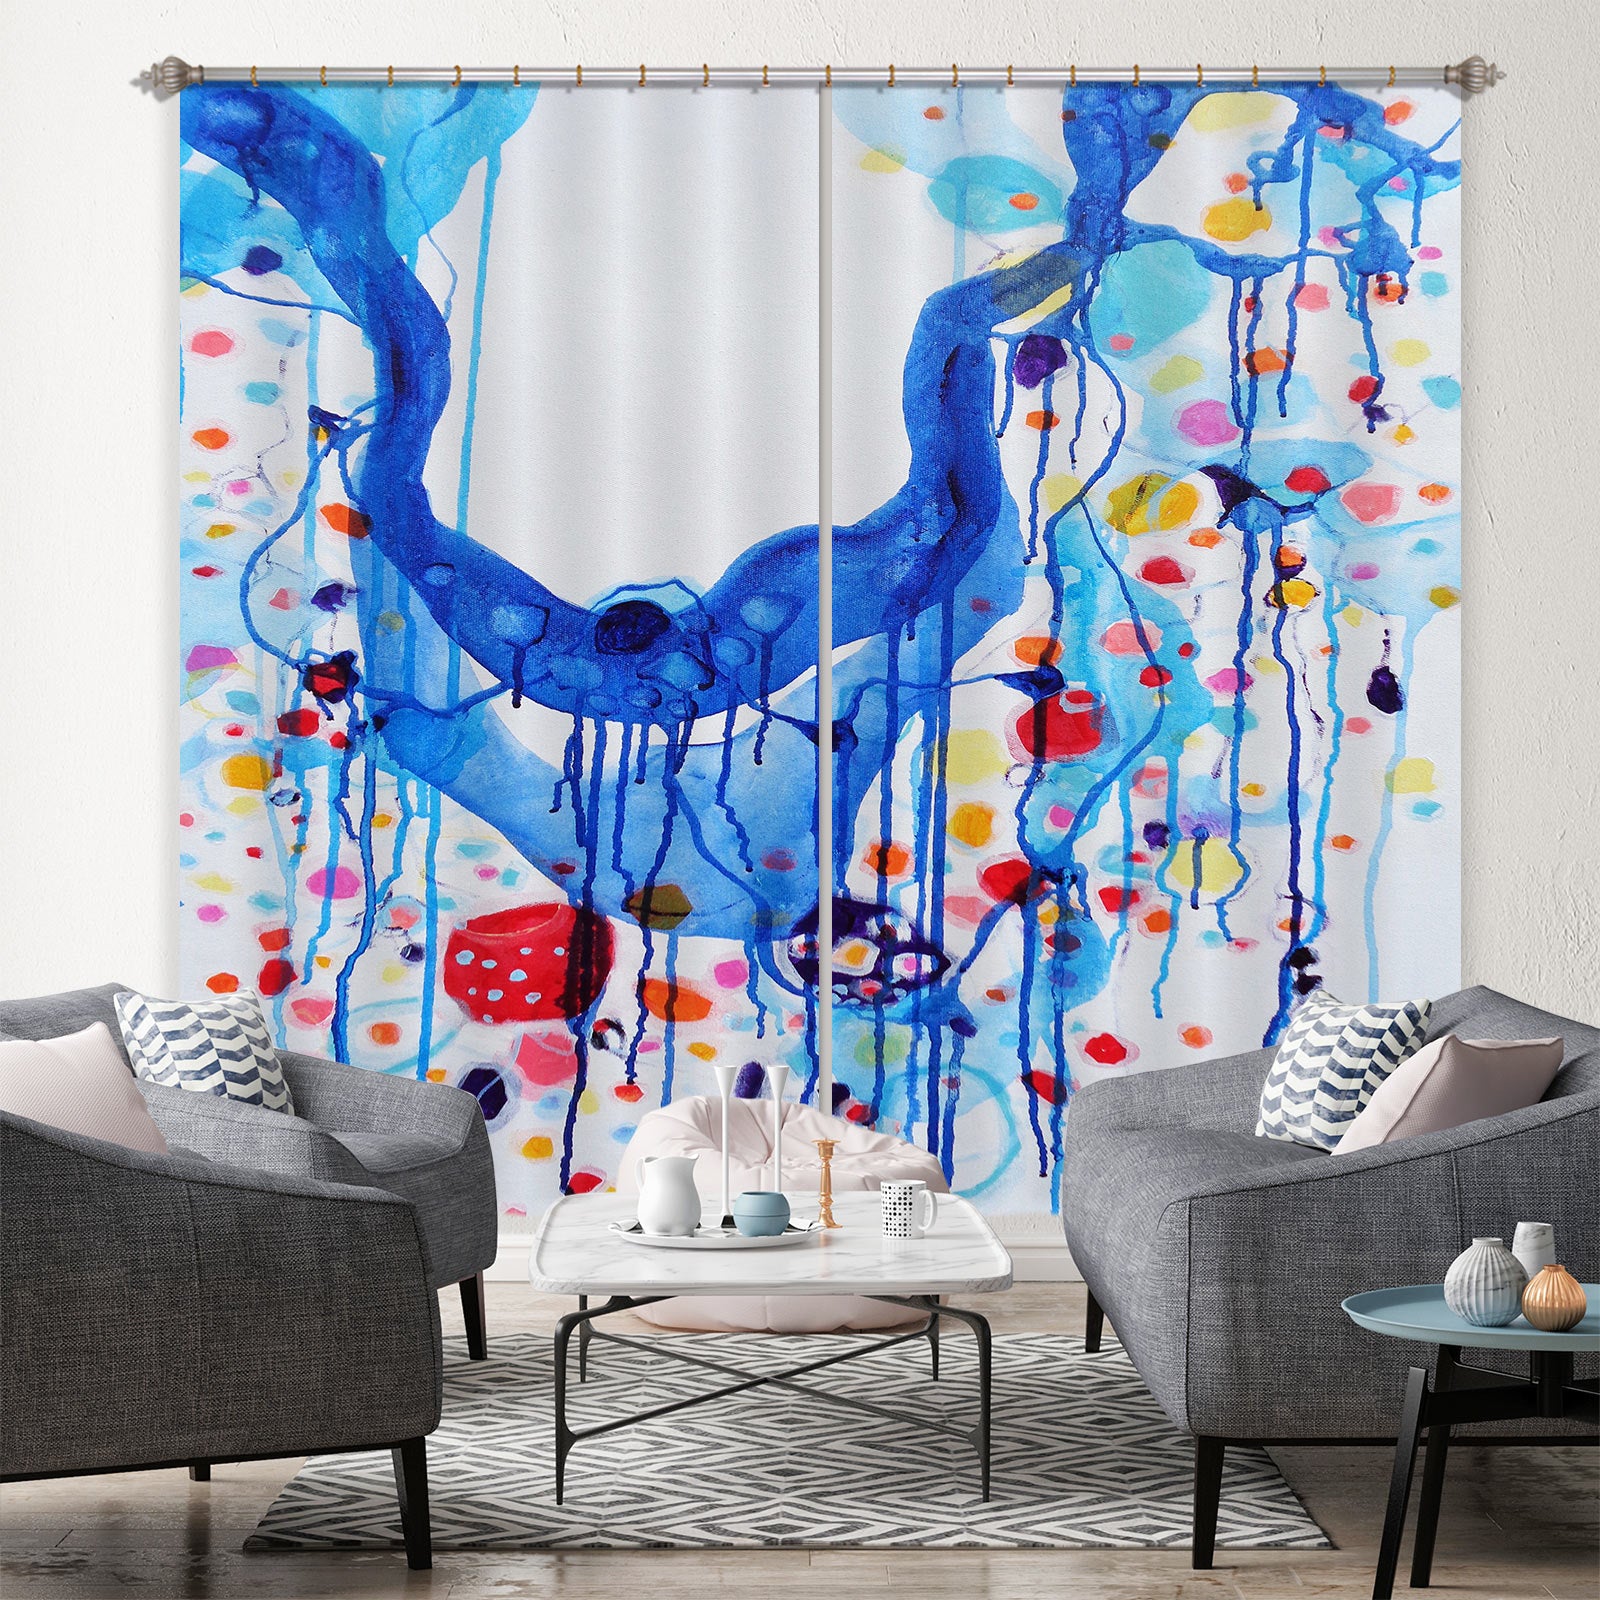 3D Blue Watercolor 2420 Misako Chida Curtain Curtains Drapes